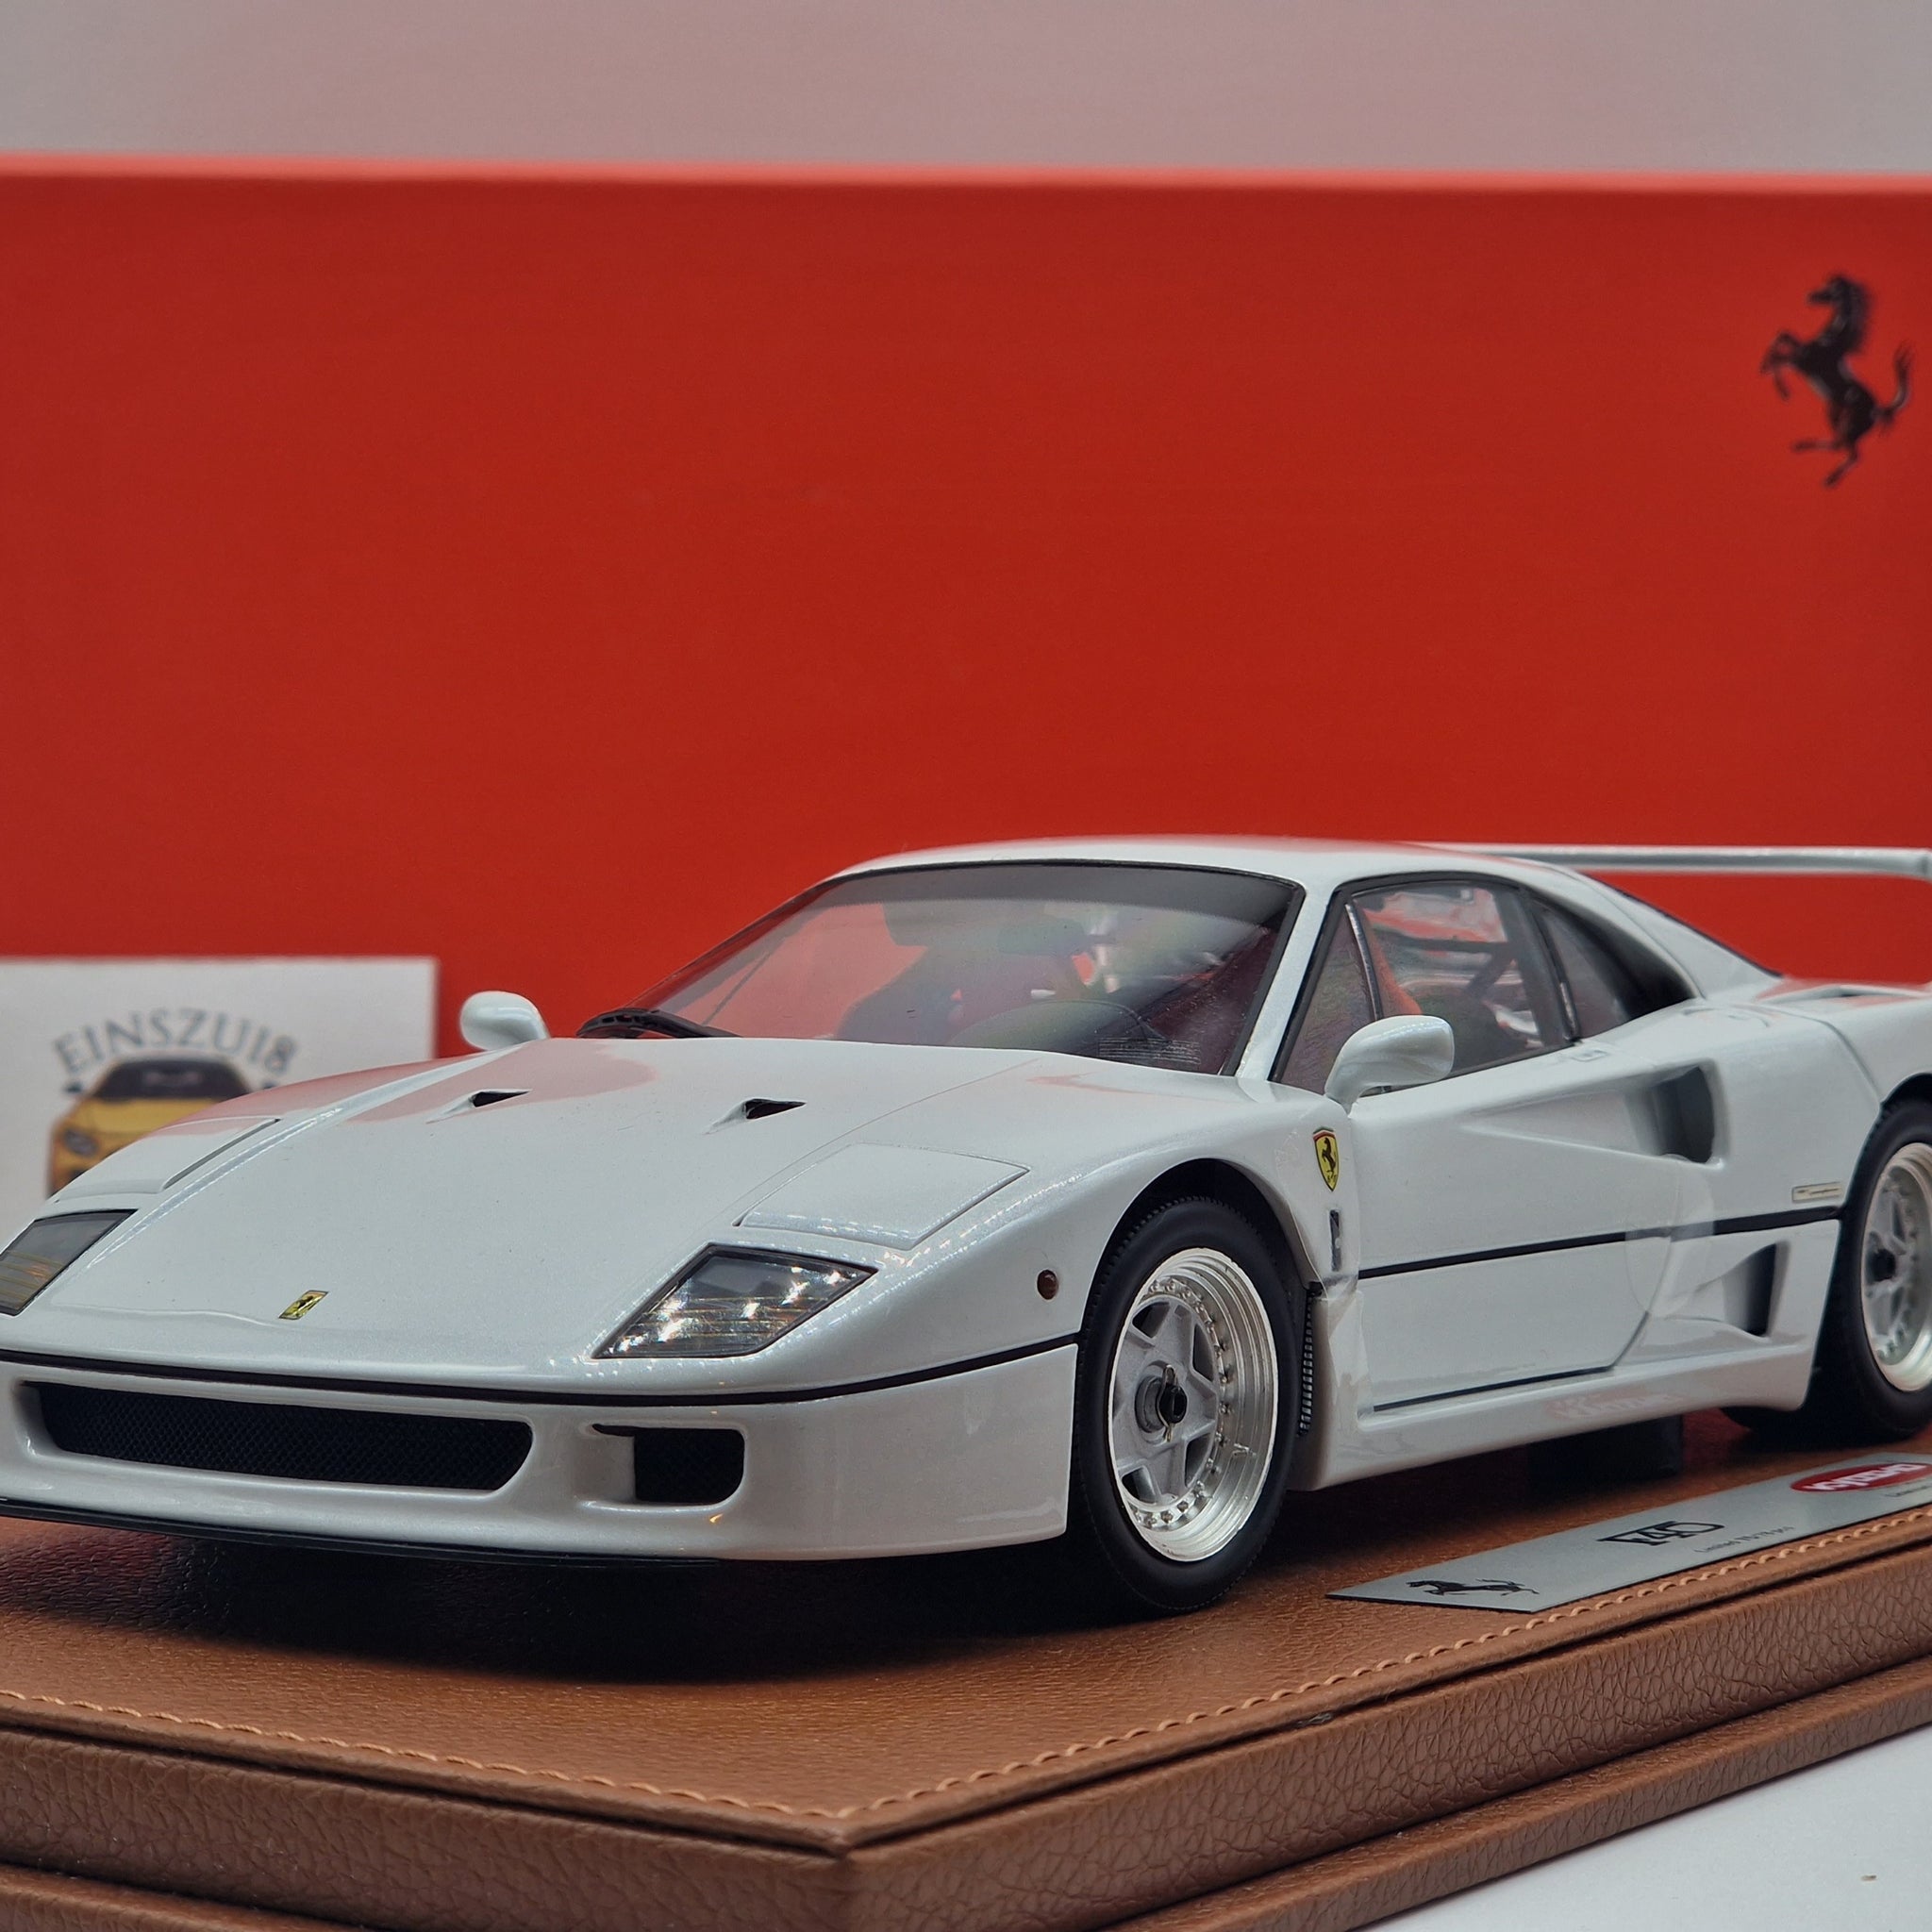 Ferrari F40 Metallic White (BBR-Kyosho)